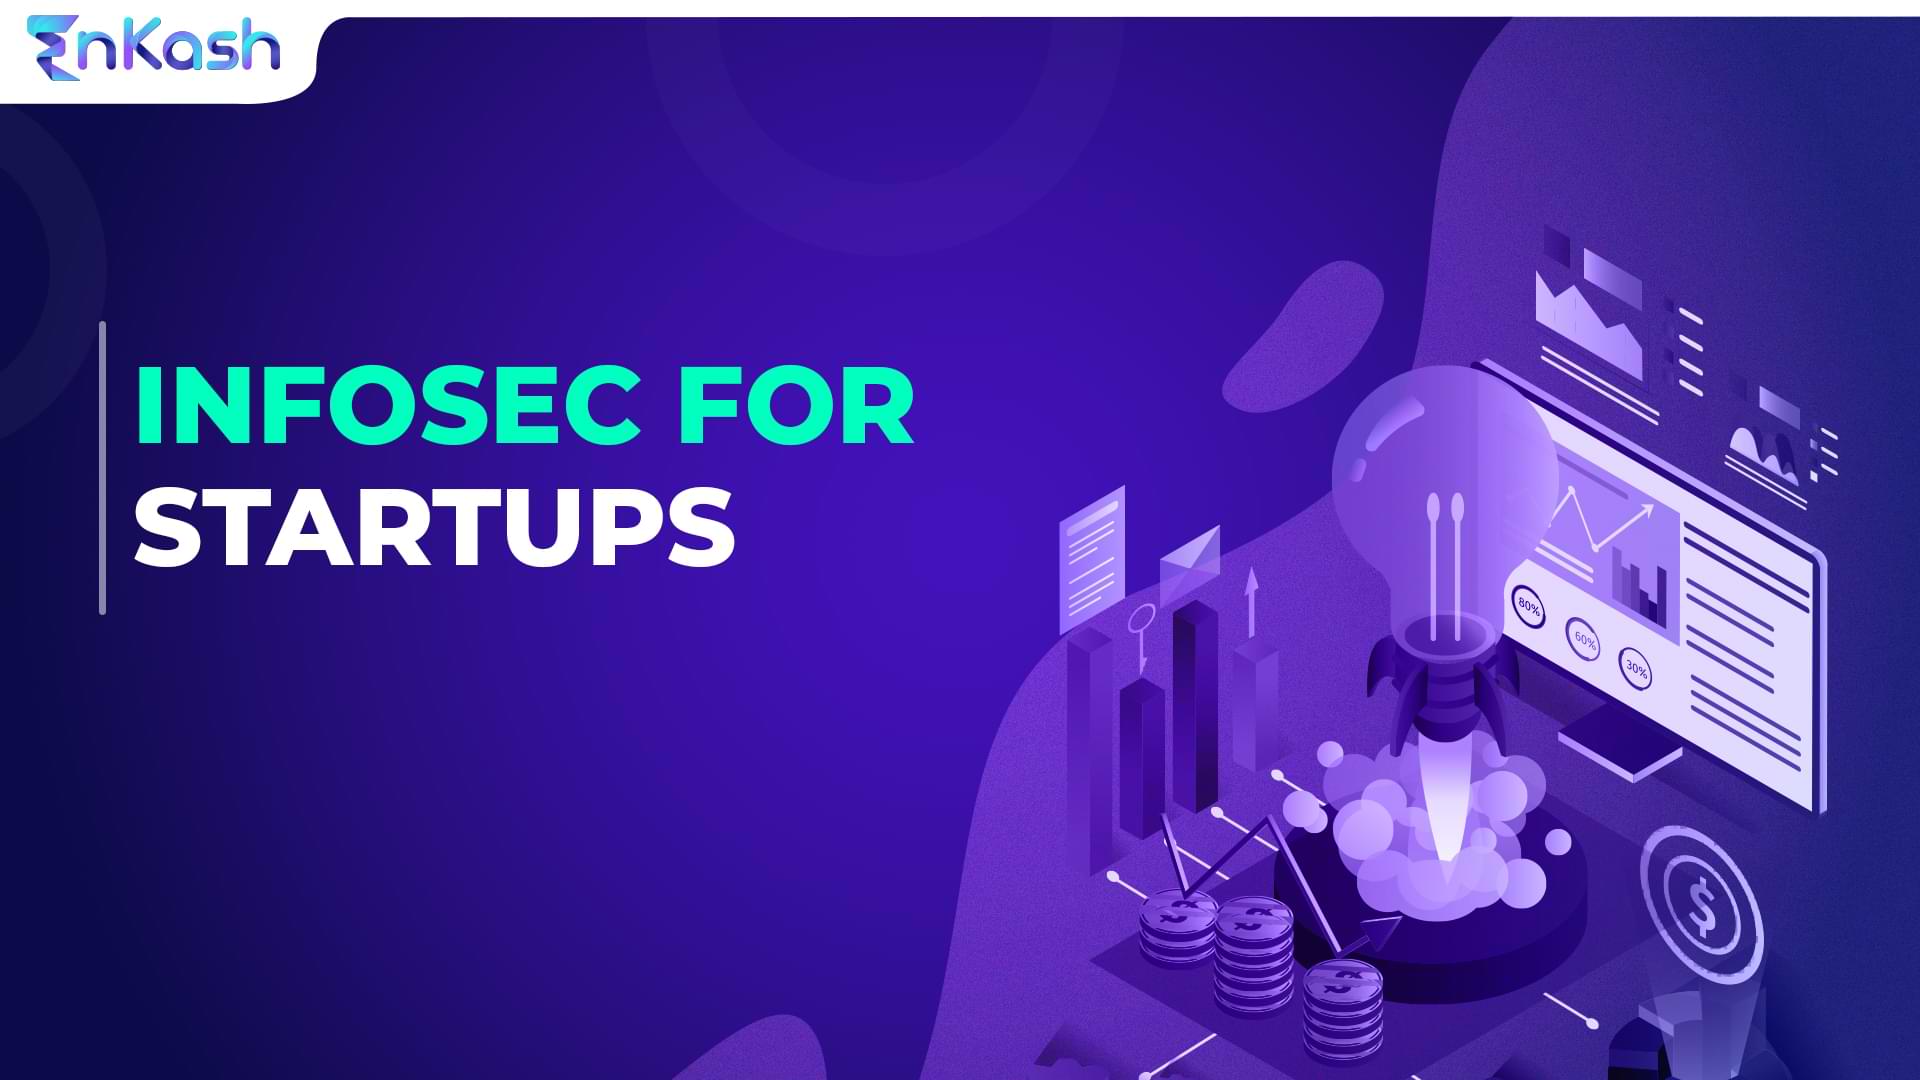 Infosec for startups